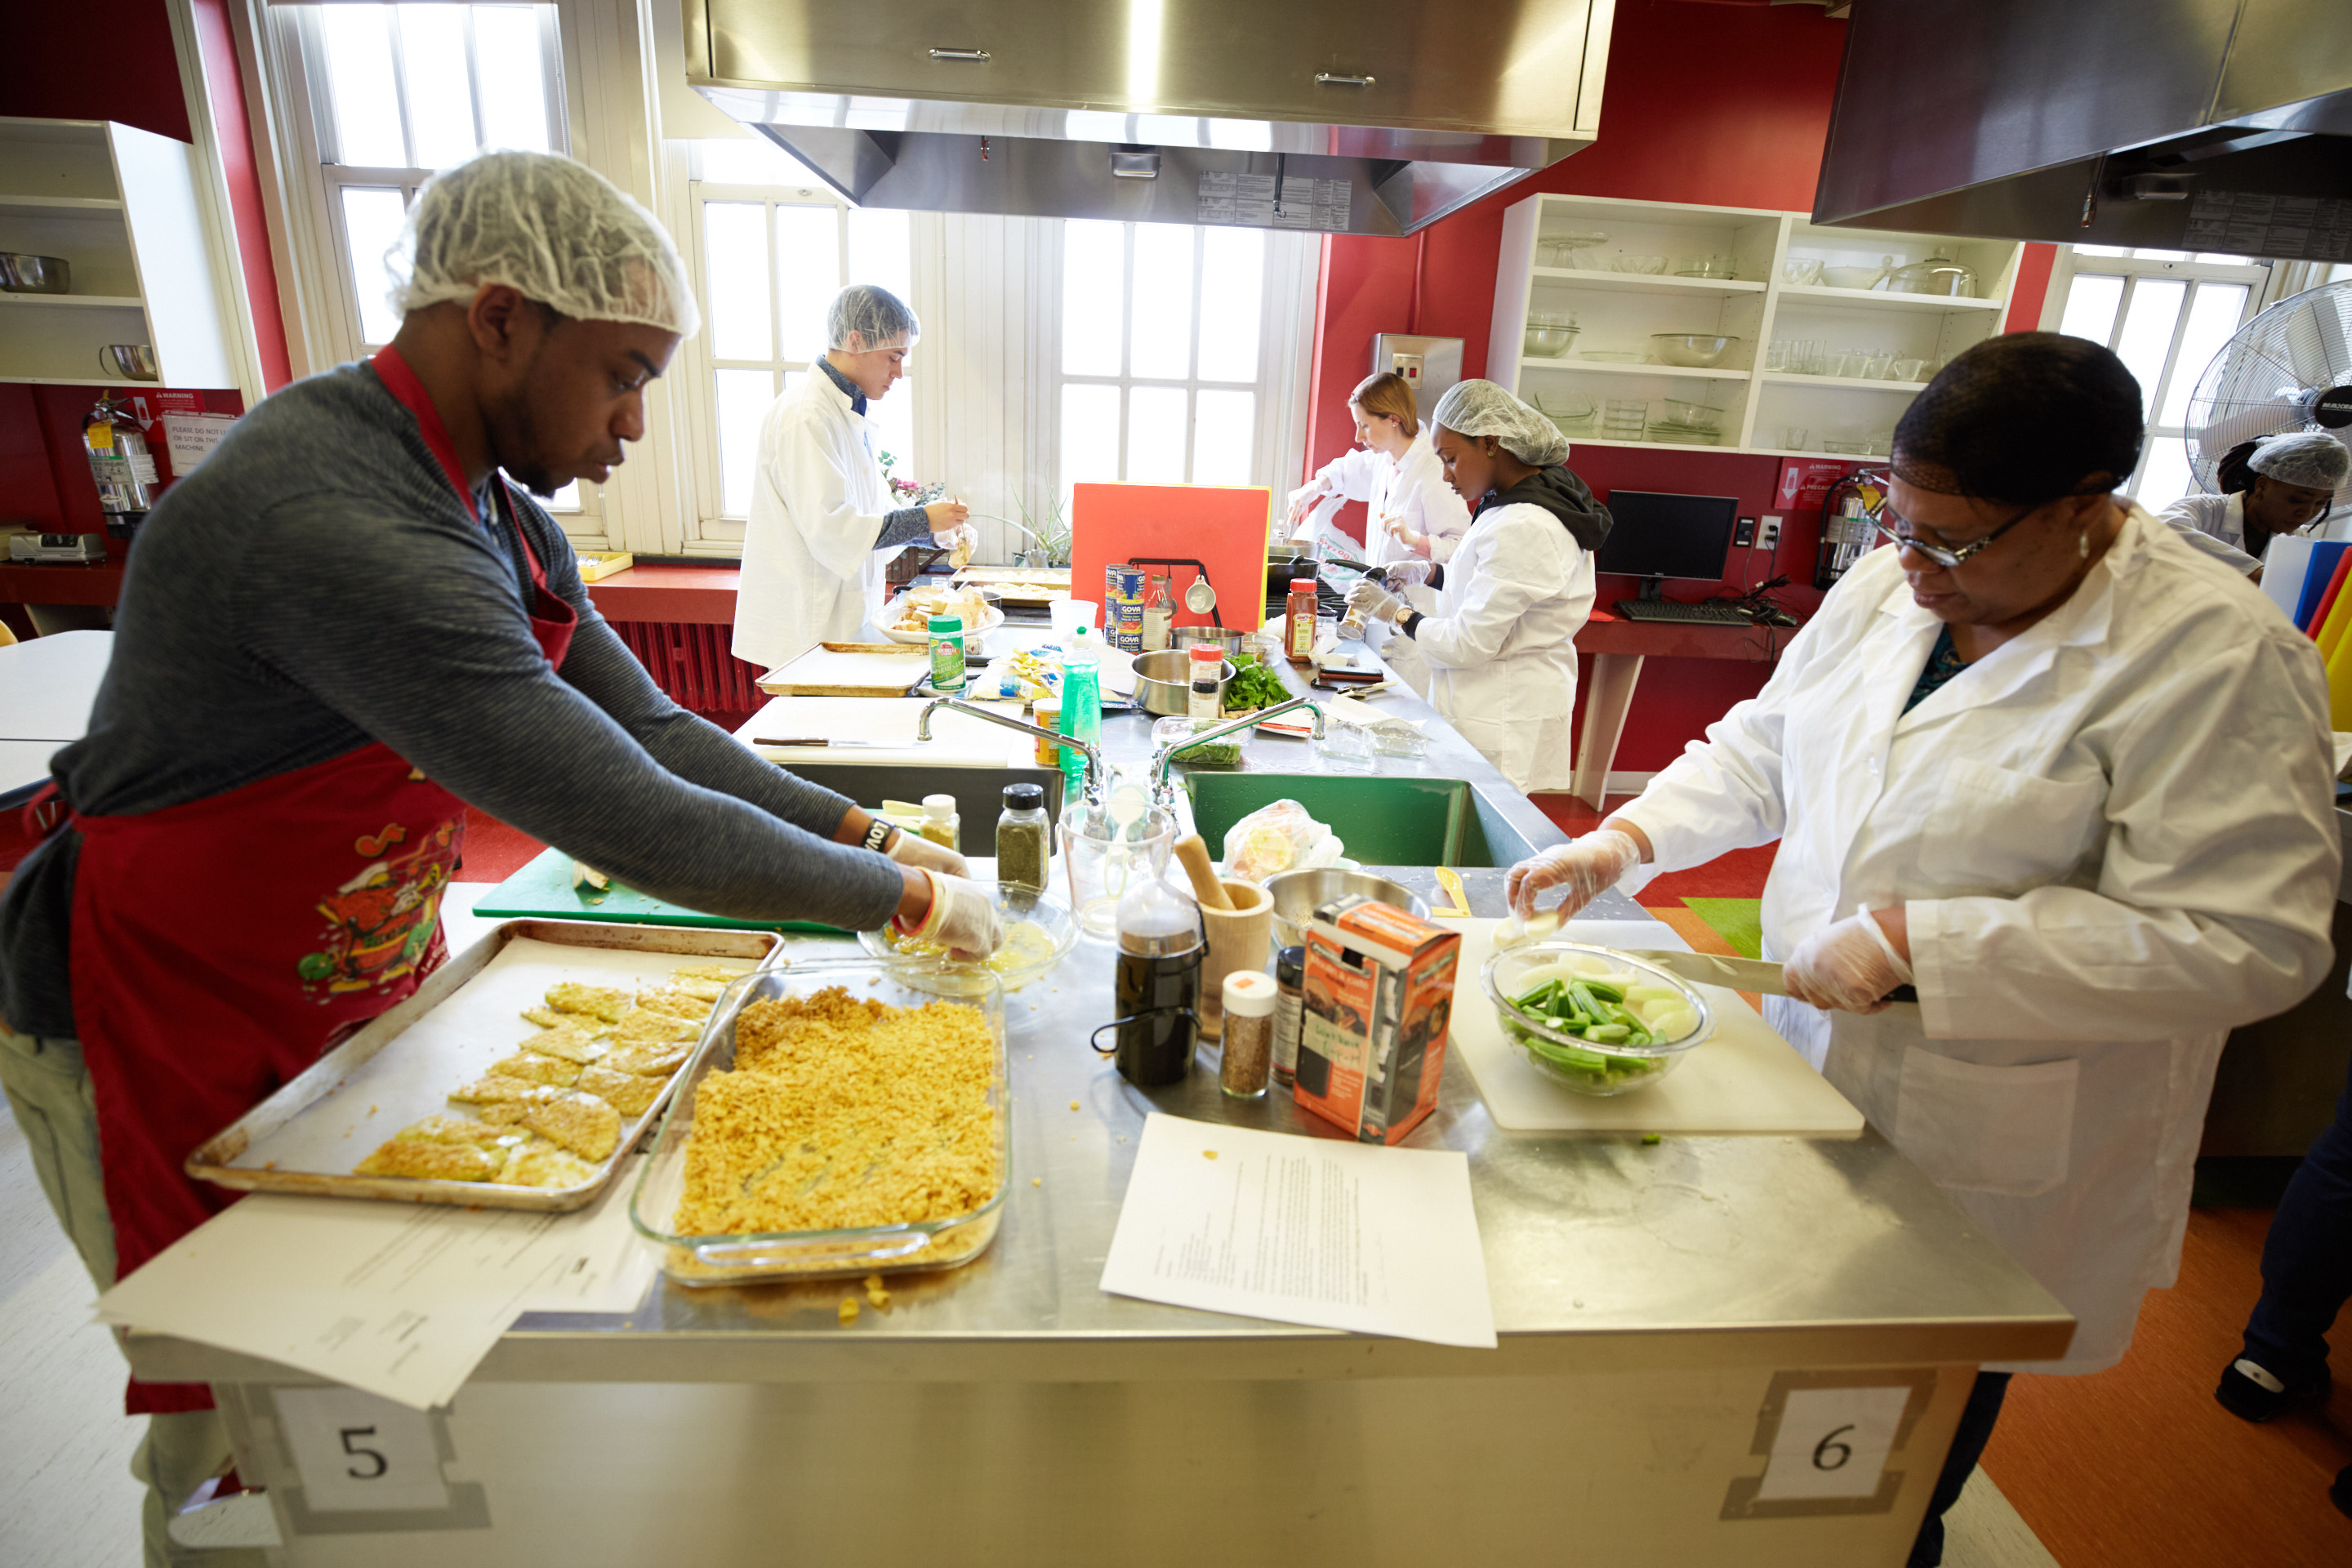 Students prepare food in Lehman's cooking lab.